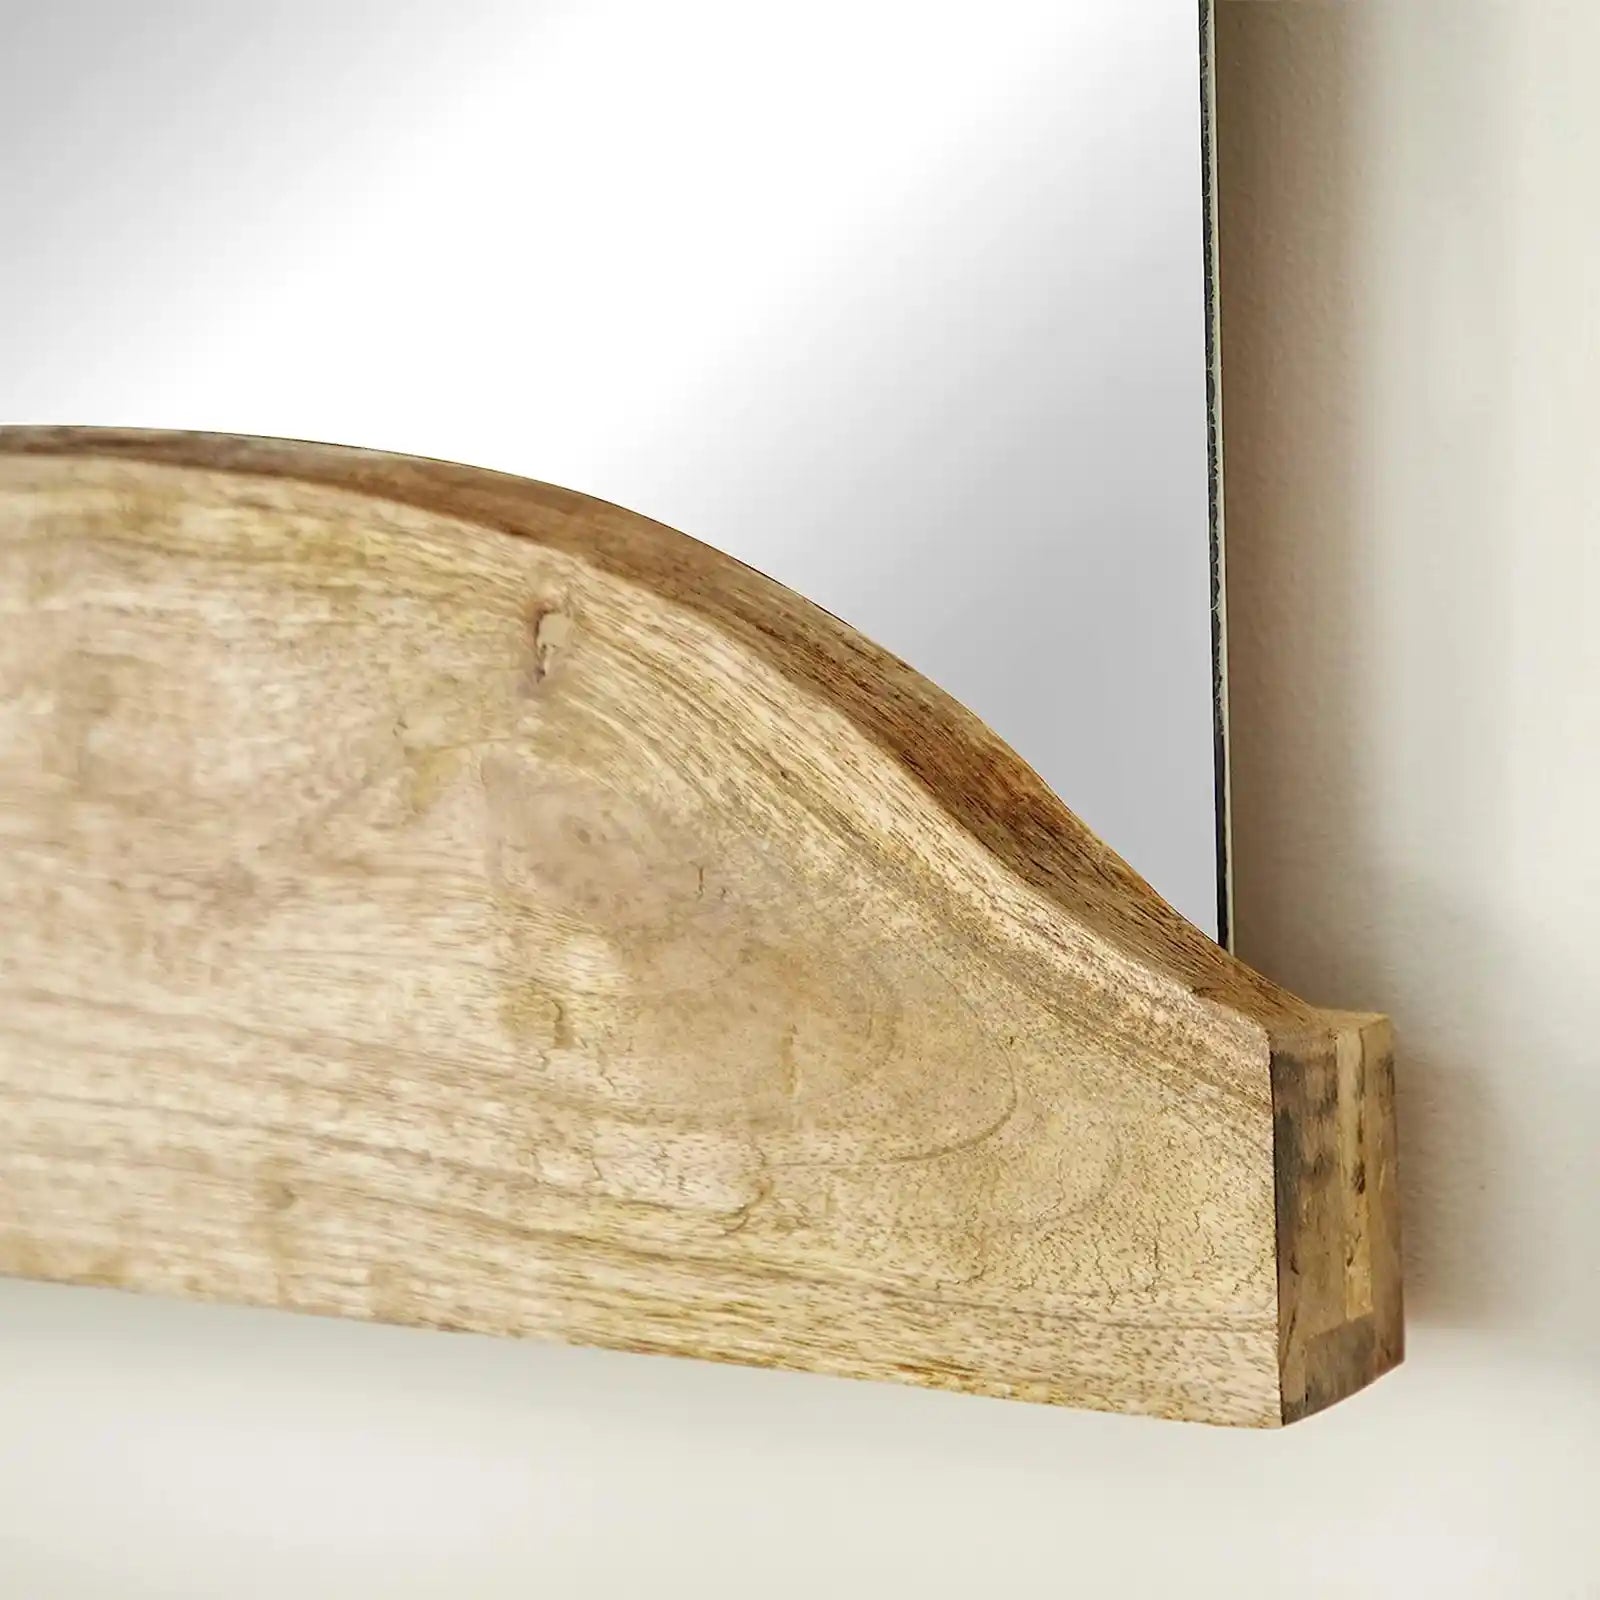 Espejo de pared con borde vivo hecho a mano de madera maciza. Juego de 2 